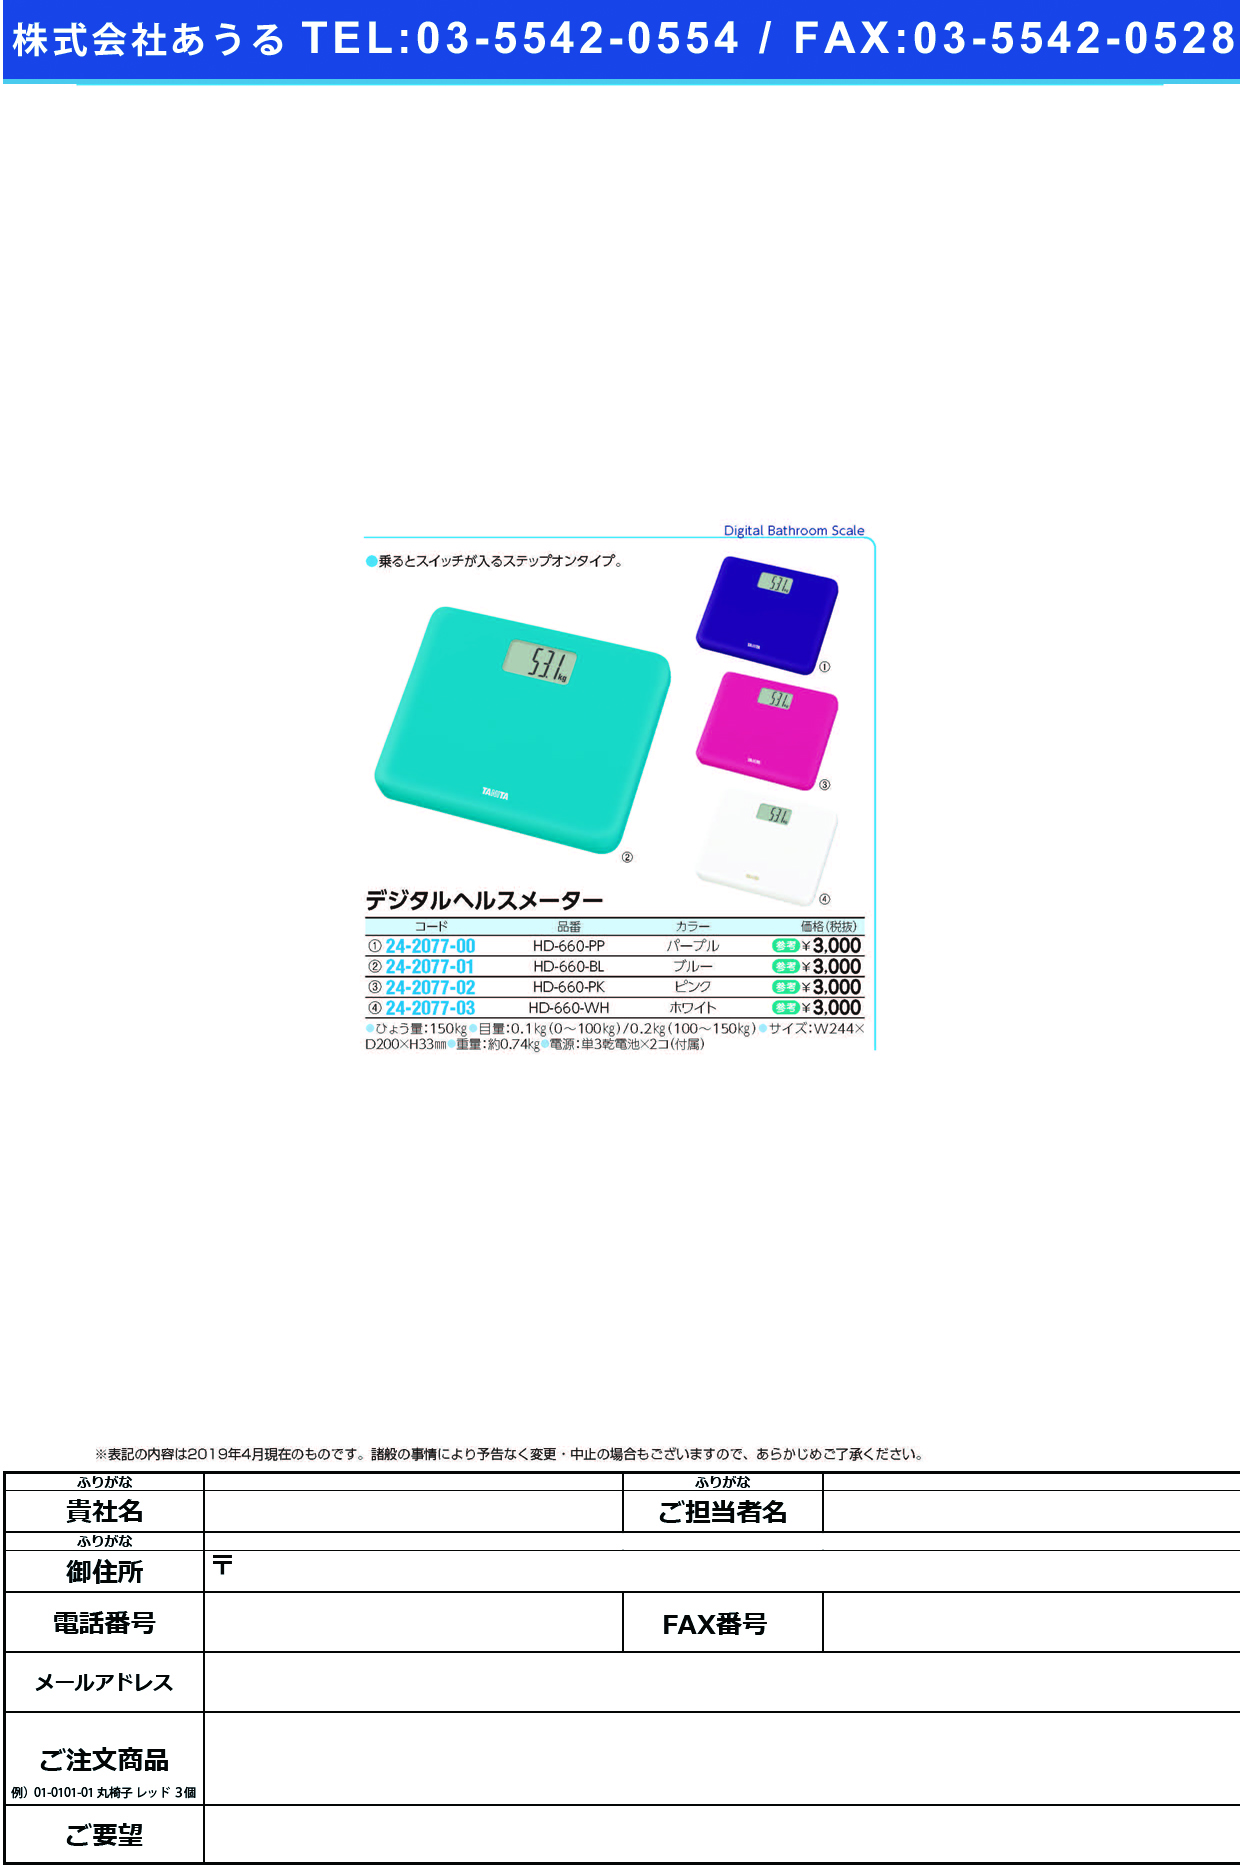 (24-2077-00)デジタルヘルスメーター HD-660(ﾊﾟｰﾌﾟﾙ) ﾃﾞｼﾞﾀﾙﾍﾙｽﾒｰﾀｰ(タニタ)【1台単位】【2019年カタログ商品】